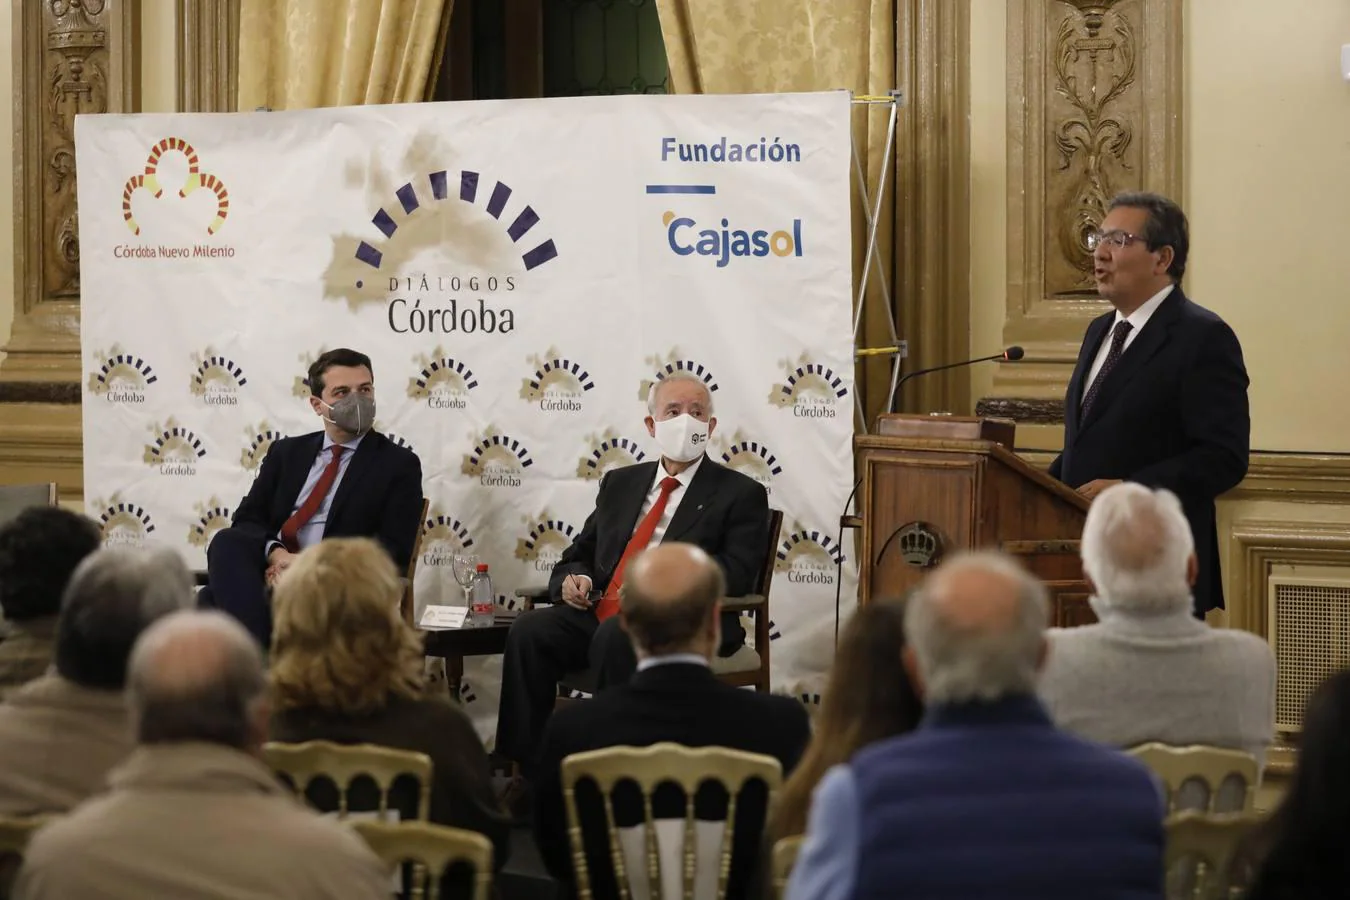 La conferencia del alcalde de Córdoba en el Foro Amador Jover, en imágenes